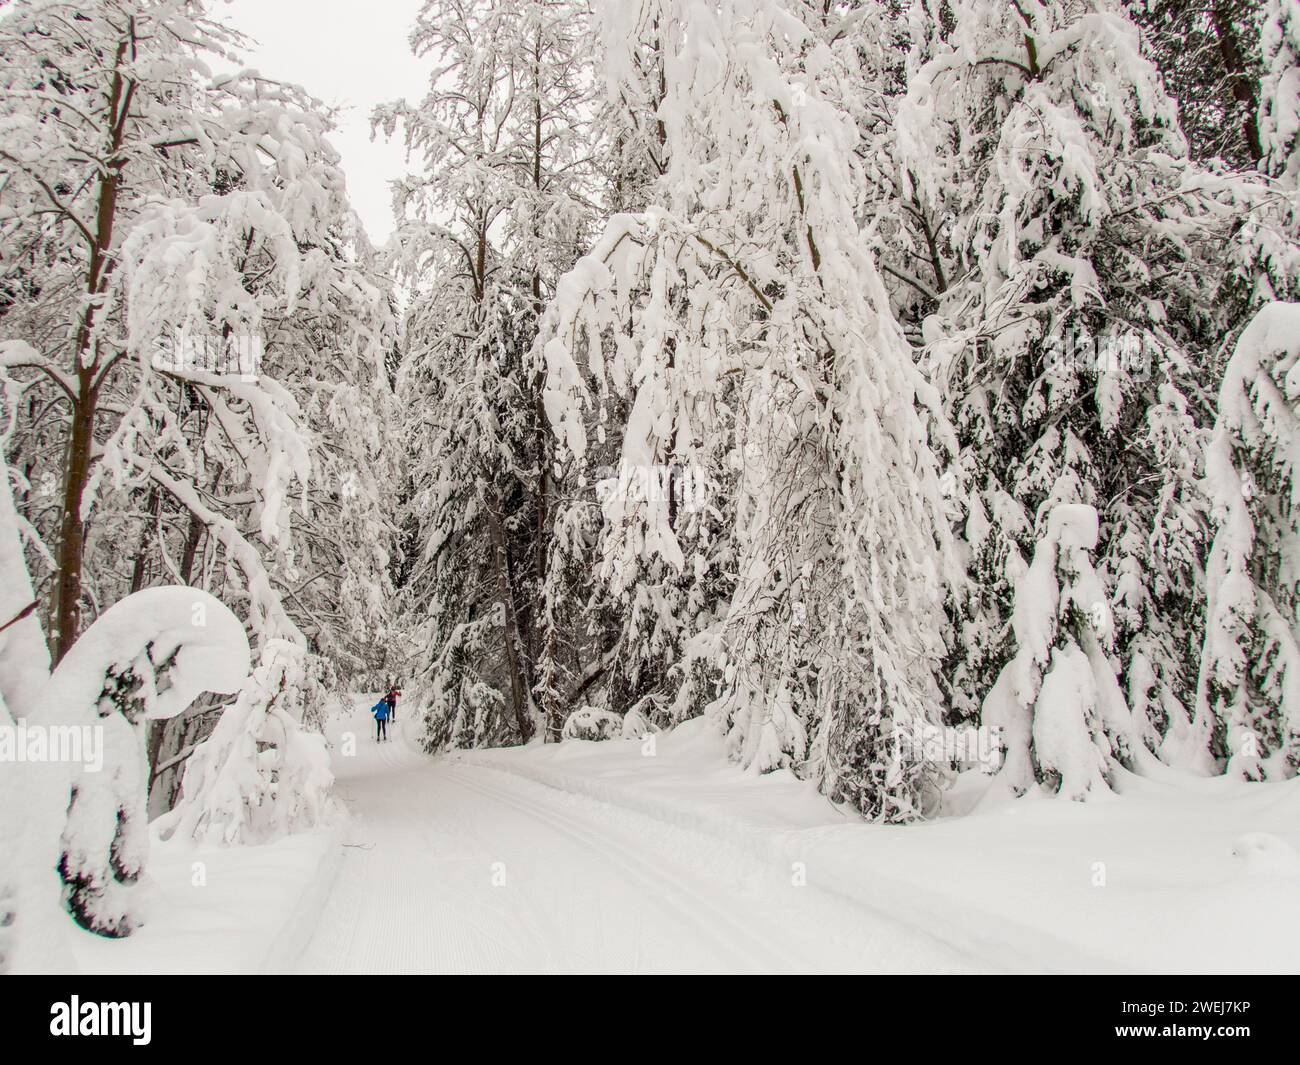 Una scena invernale con le persone che praticano lo sci di fondo attraverso la foresta innevata del Lake Wenatchee State Park nella parte orientale dello Stato di Washington, Stati Uniti. Foto Stock